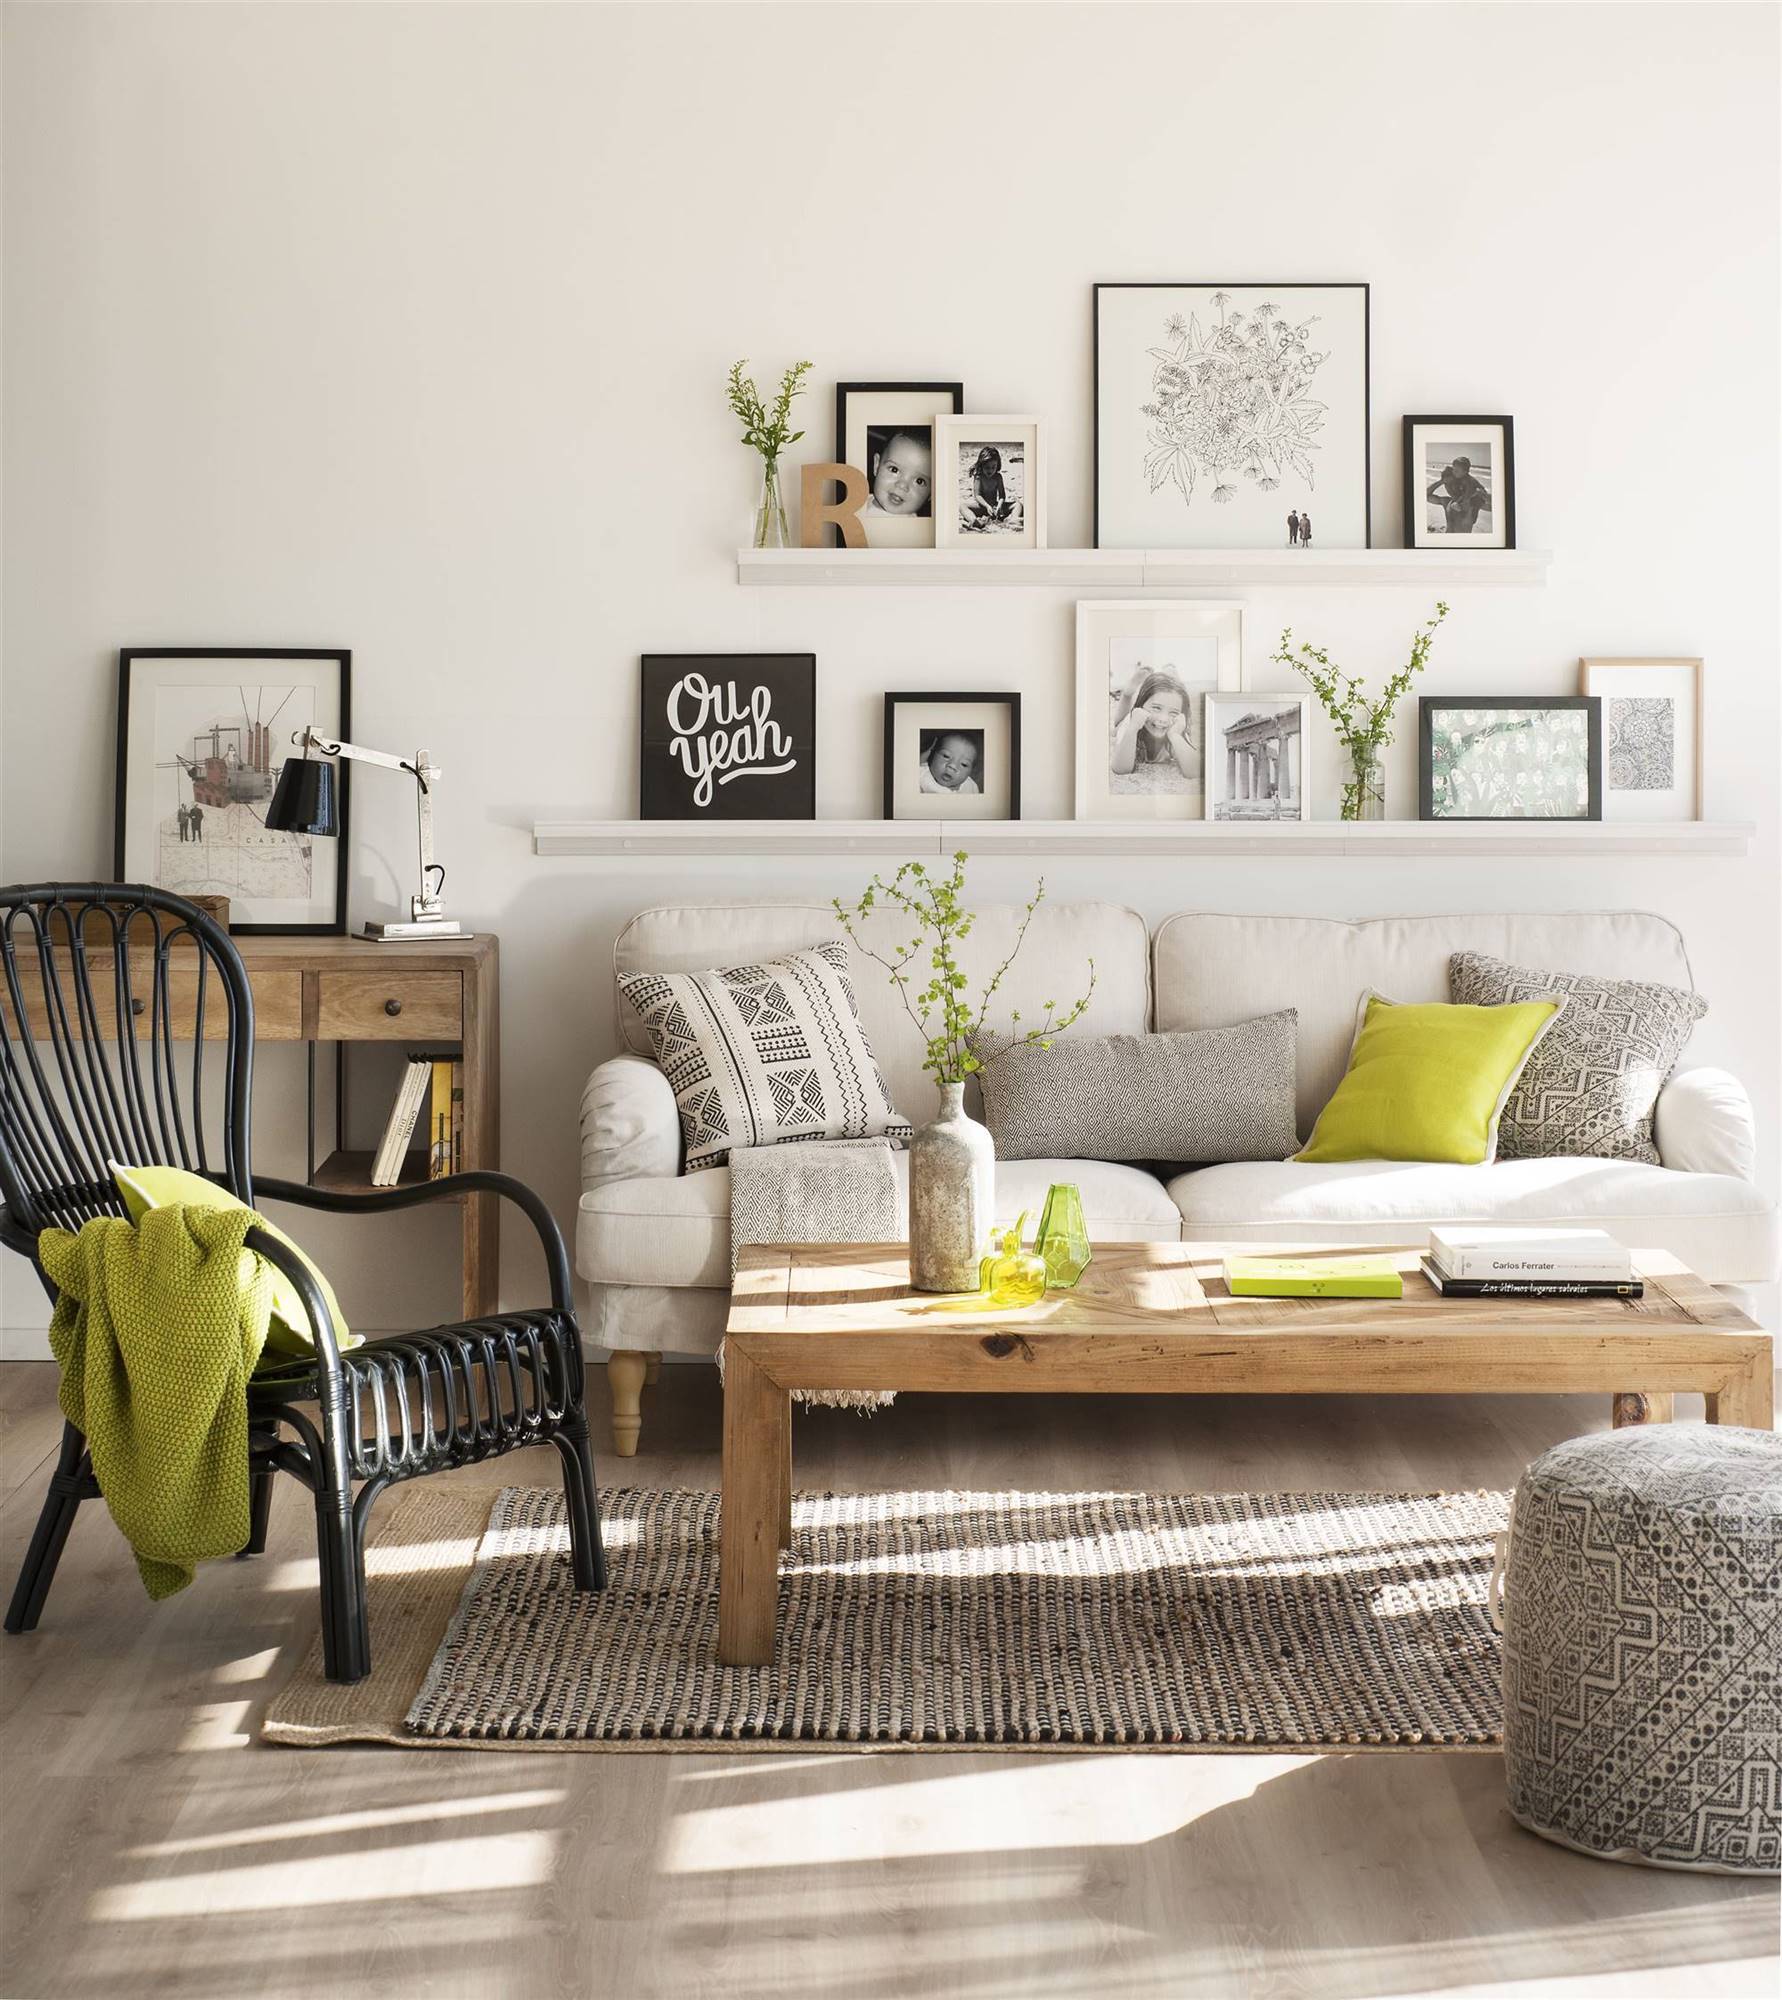 Salón con baldas sobre el sofá con cuadros apoyados y alfombra, puf y cojines con motivos geométricos en blanco y negro.